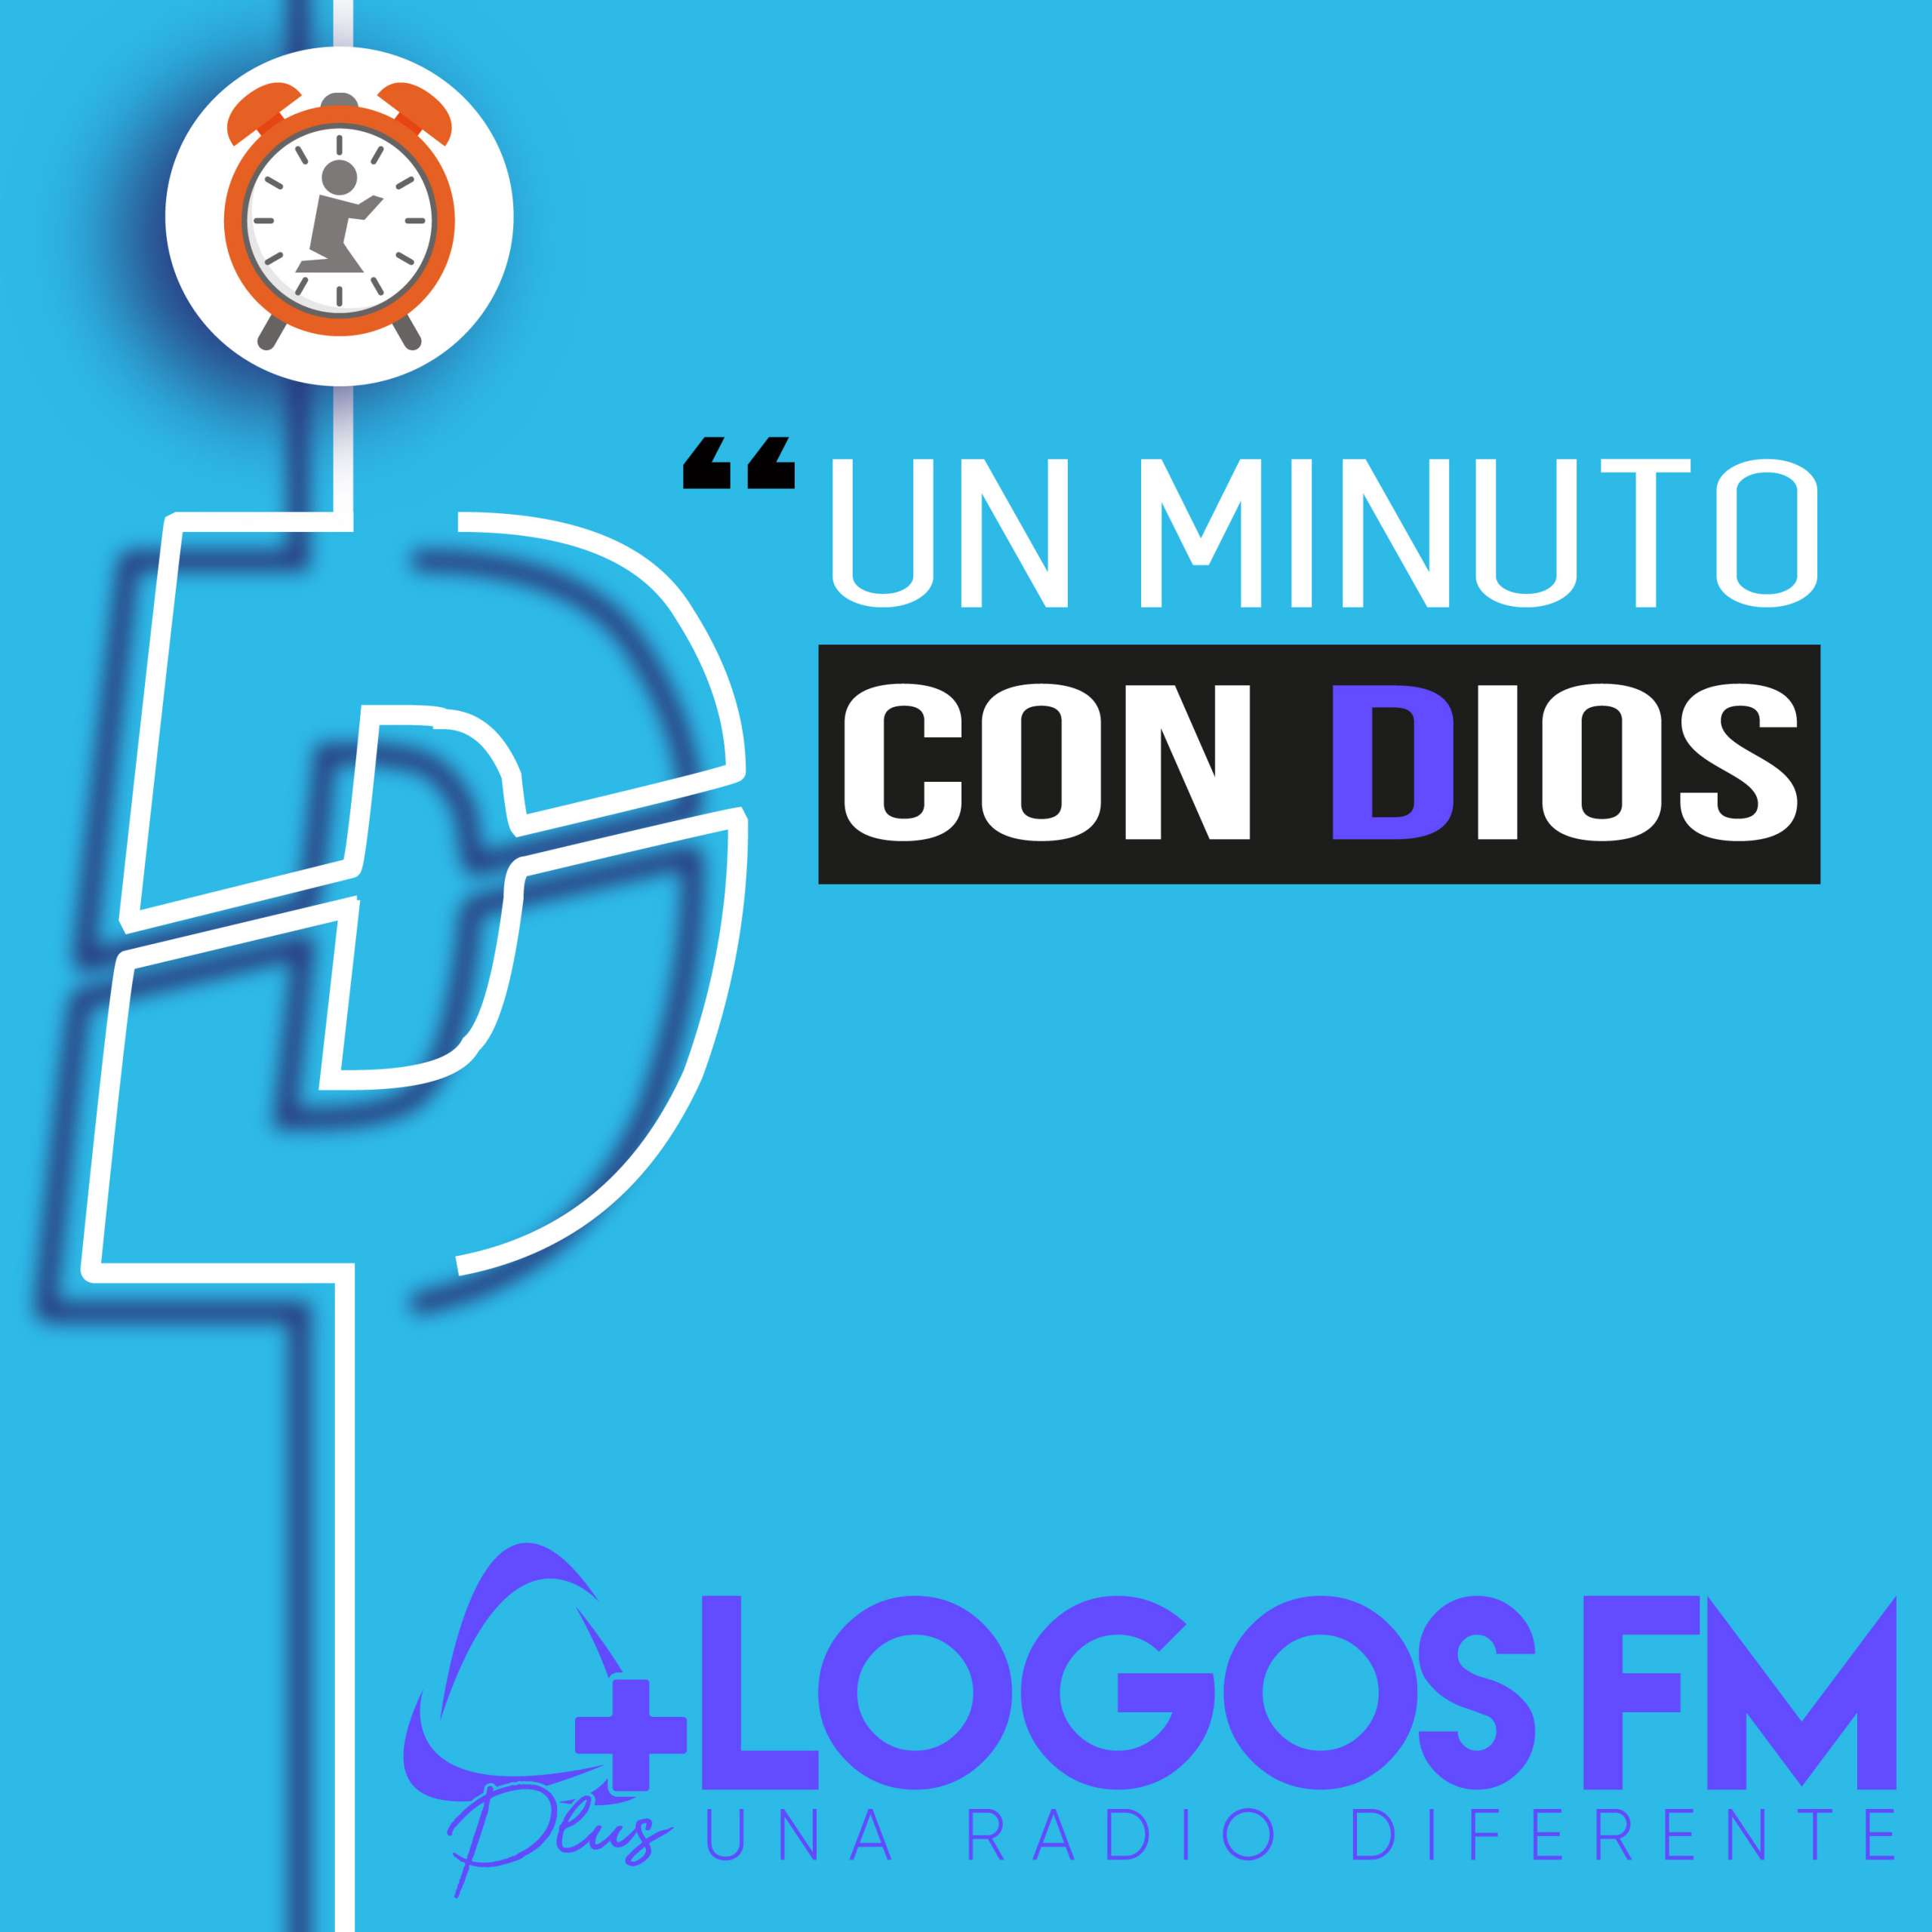 Un minuto con Dios - Episodio 436 - Oniss García